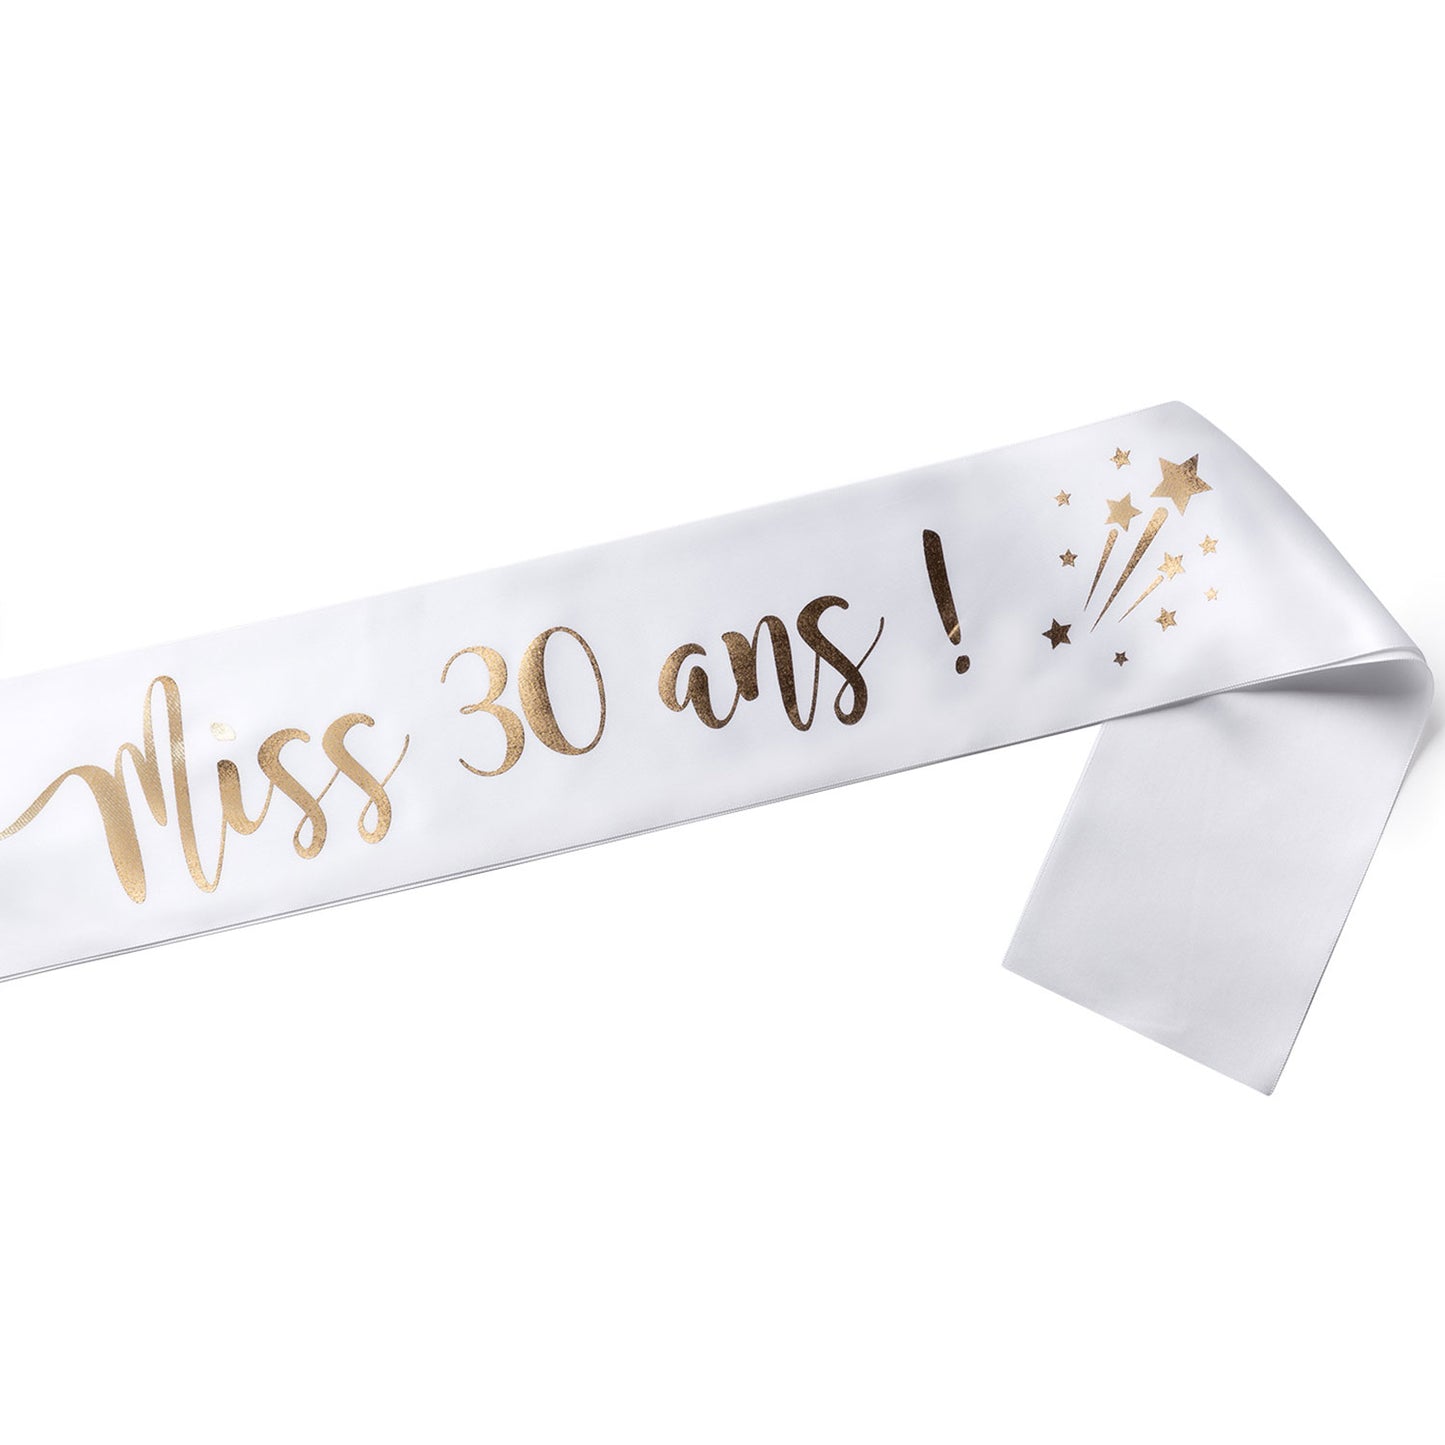 Echarpe Miss 30 ans pour fêter son 30ième Anniversaire - Blanche et Or